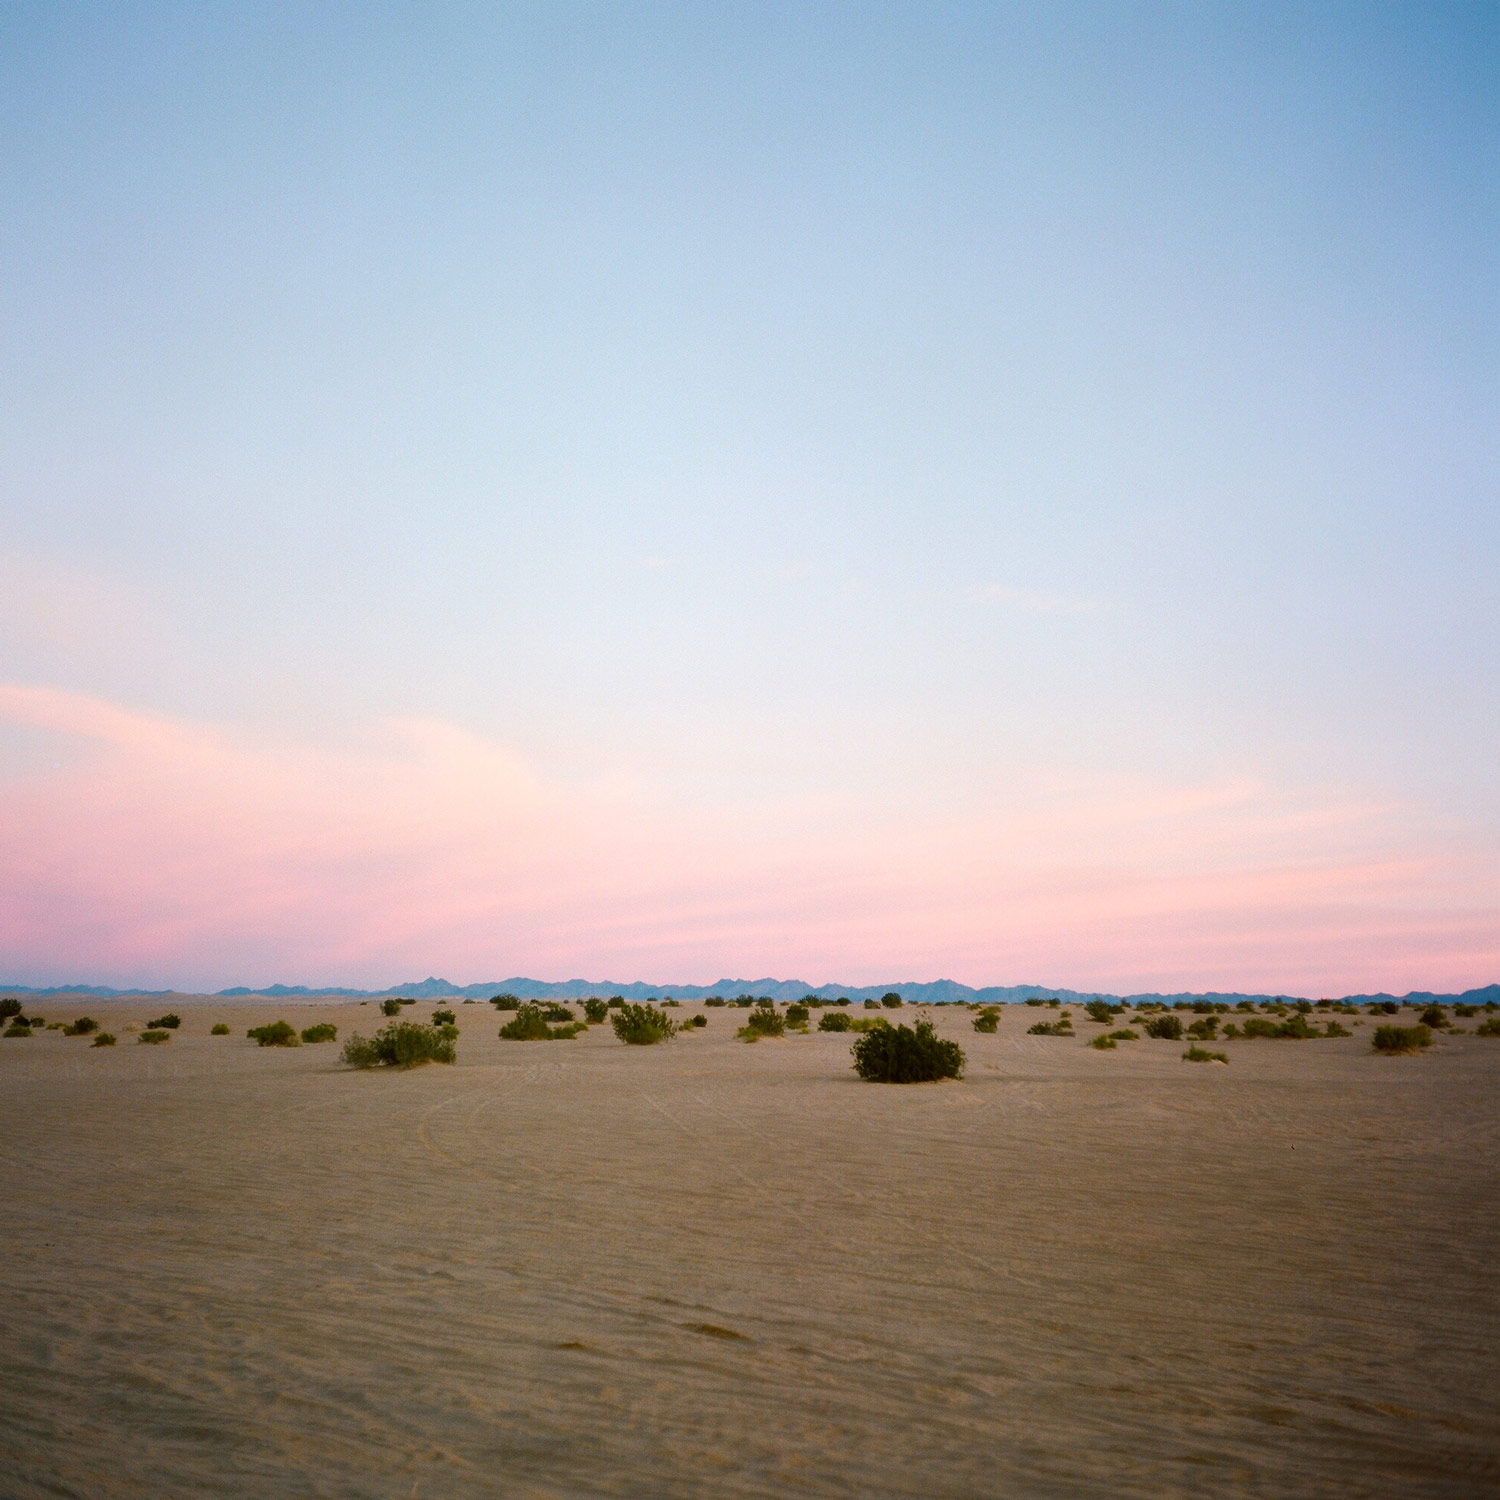 Imperial Sand Dunes, Glamis, California